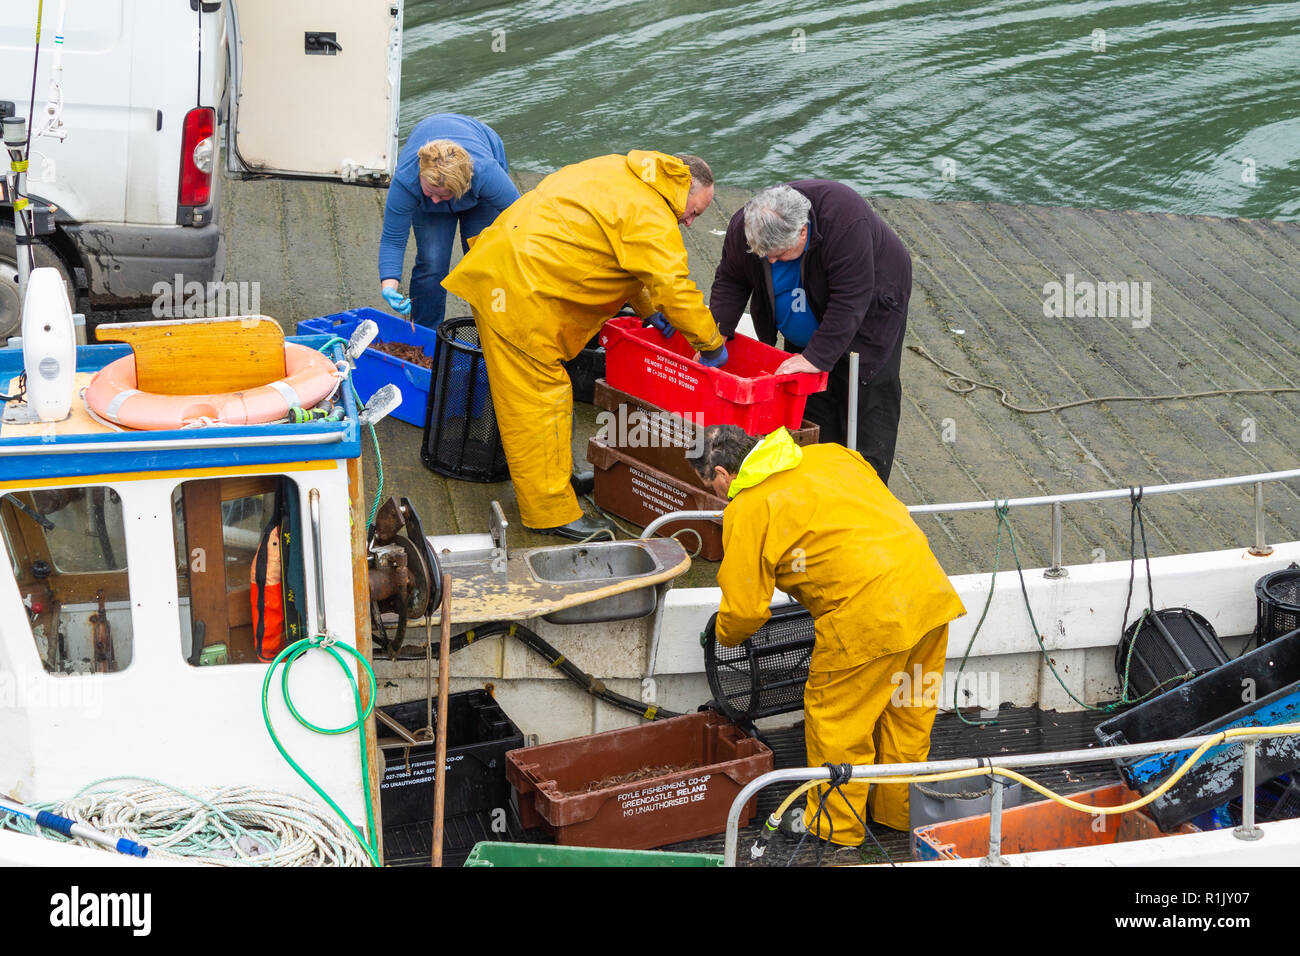 Pescatore di gamberetti sbarco la sua cattura del giorno di gamberi freschi in Irlanda Foto Stock